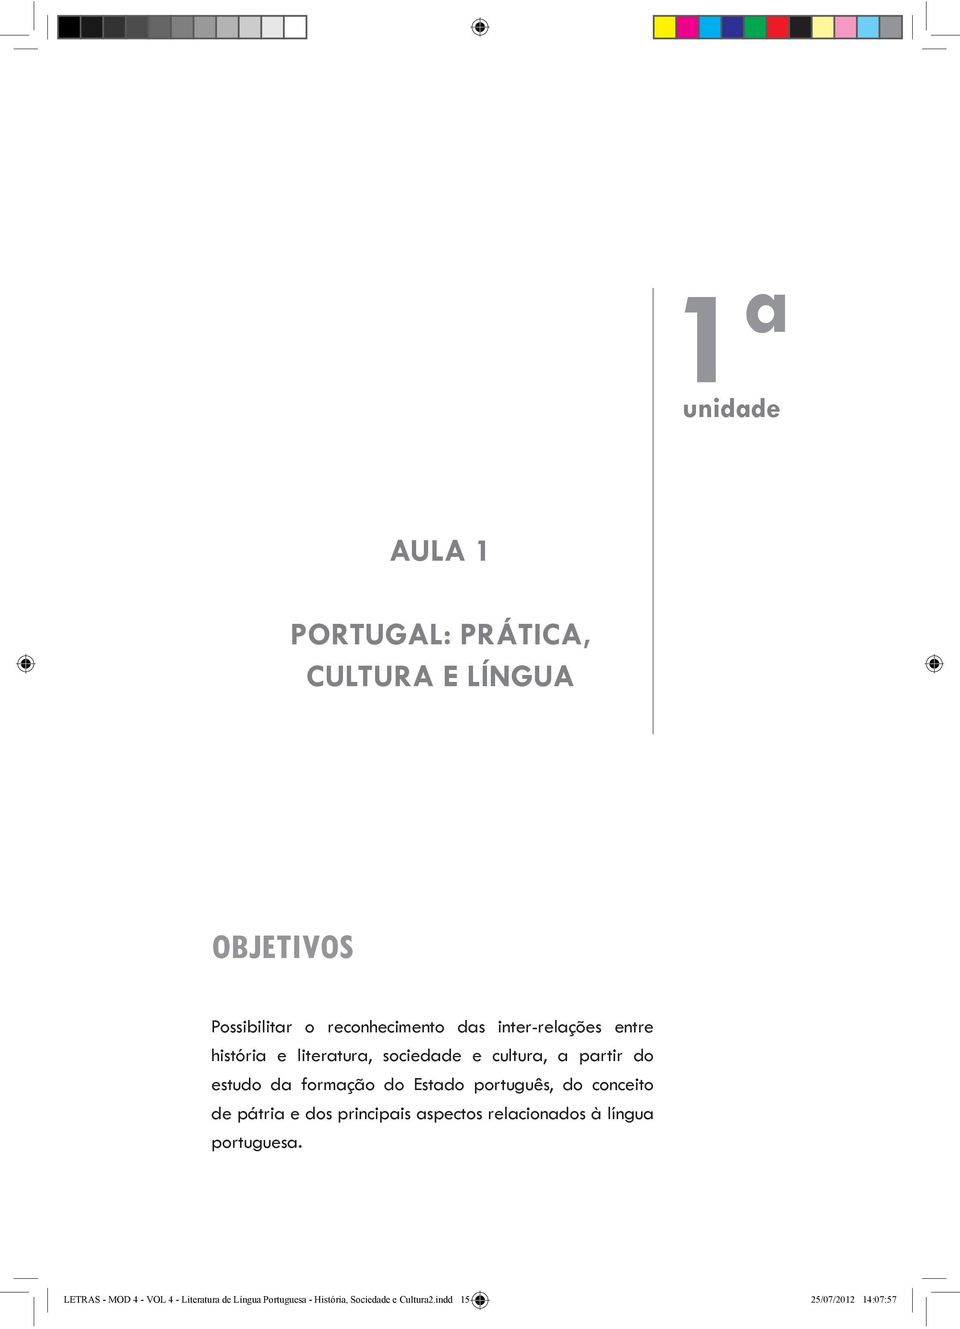 Estado português, do conceito de pátria e dos principais aspectos relacionados à língua portuguesa.